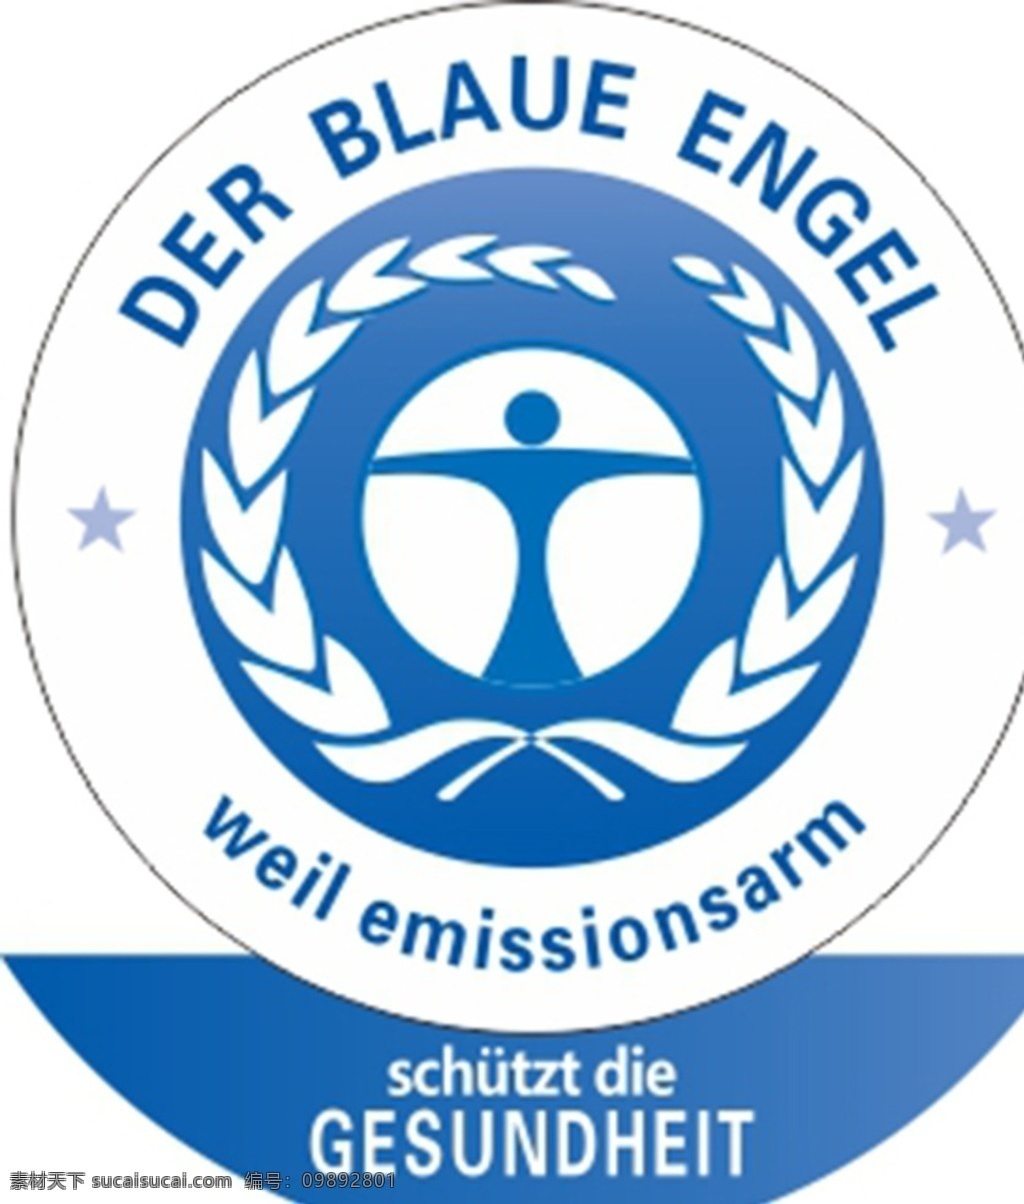 欧洲 蓝天使 环保 产品认证 标识 环保产品 认证 矢量 logo设计